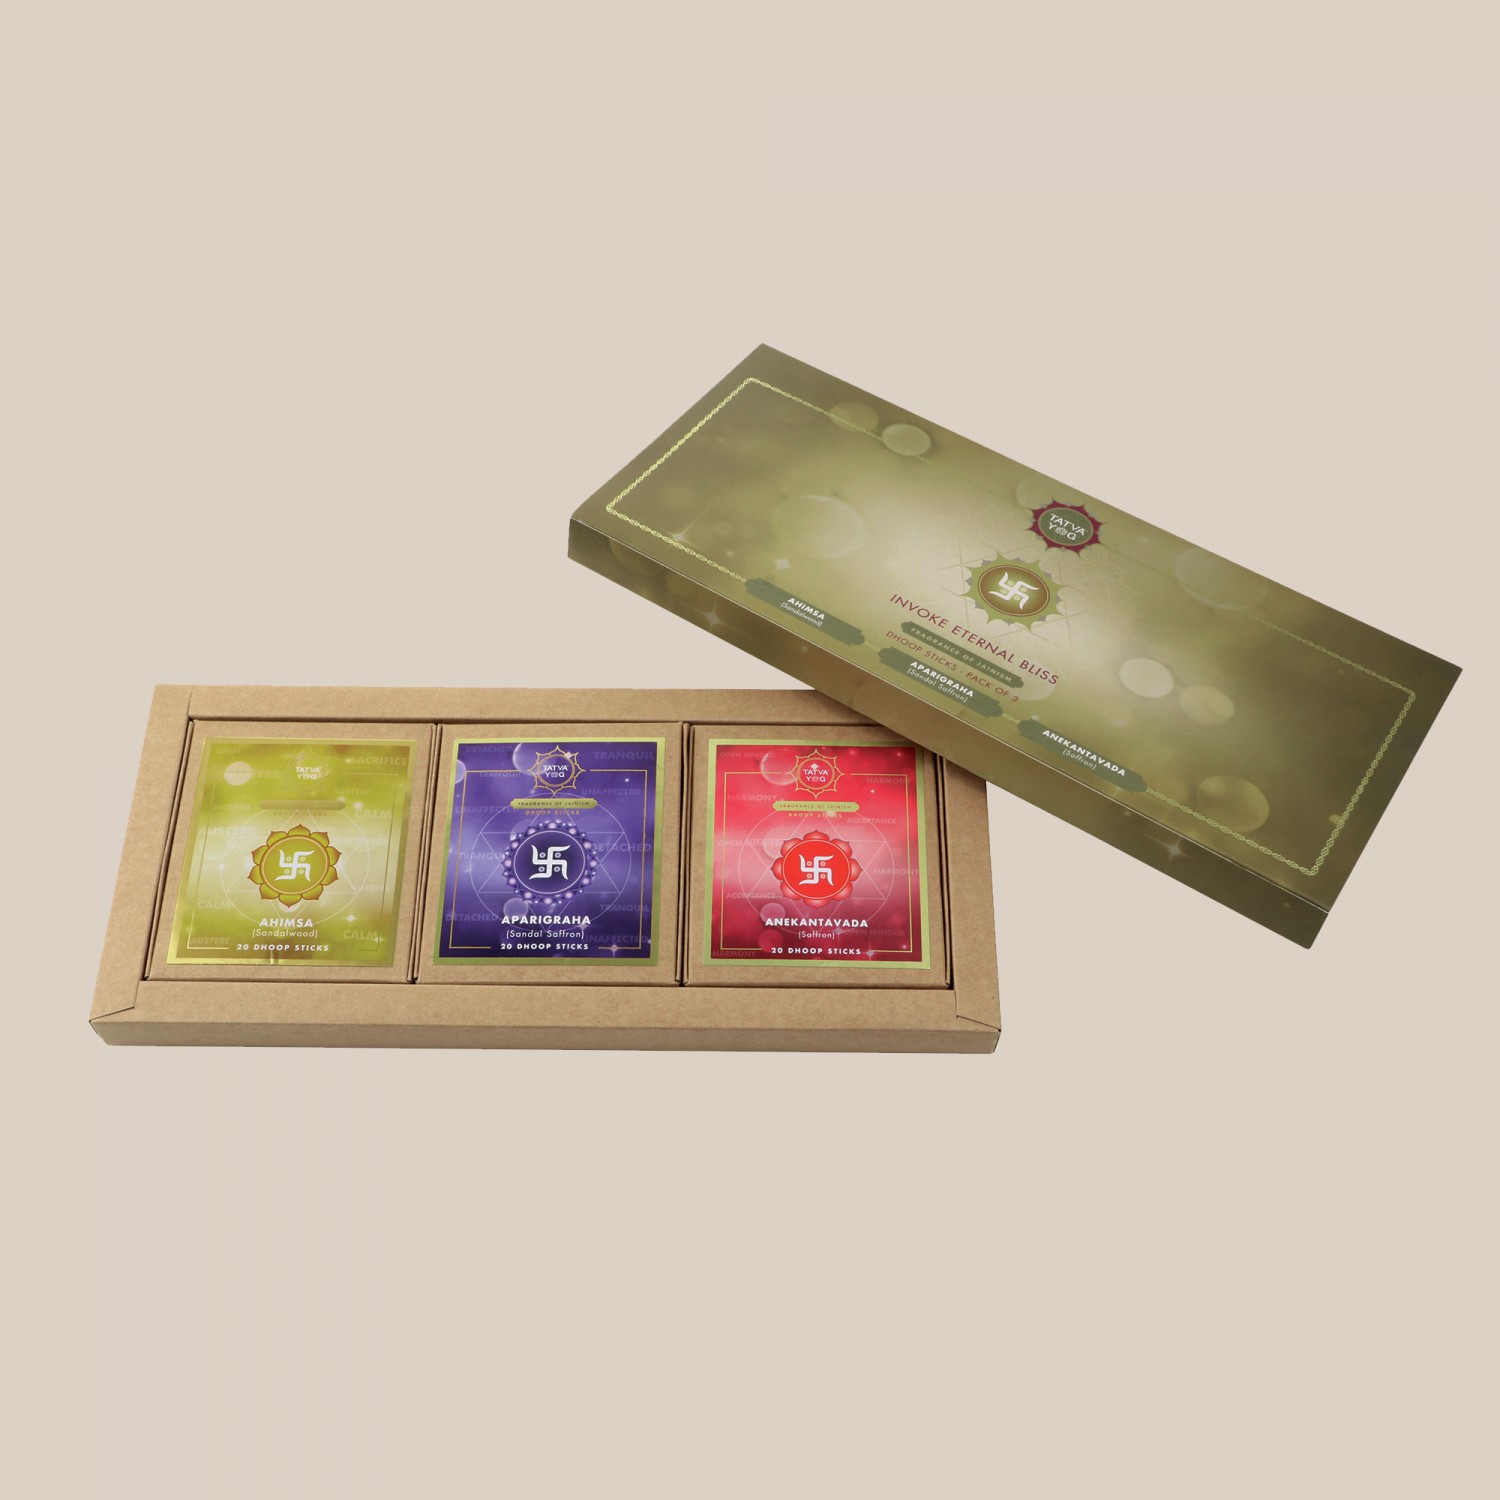 Tatva Dhoop Sticks - 3 Pack Jainism Gift Box